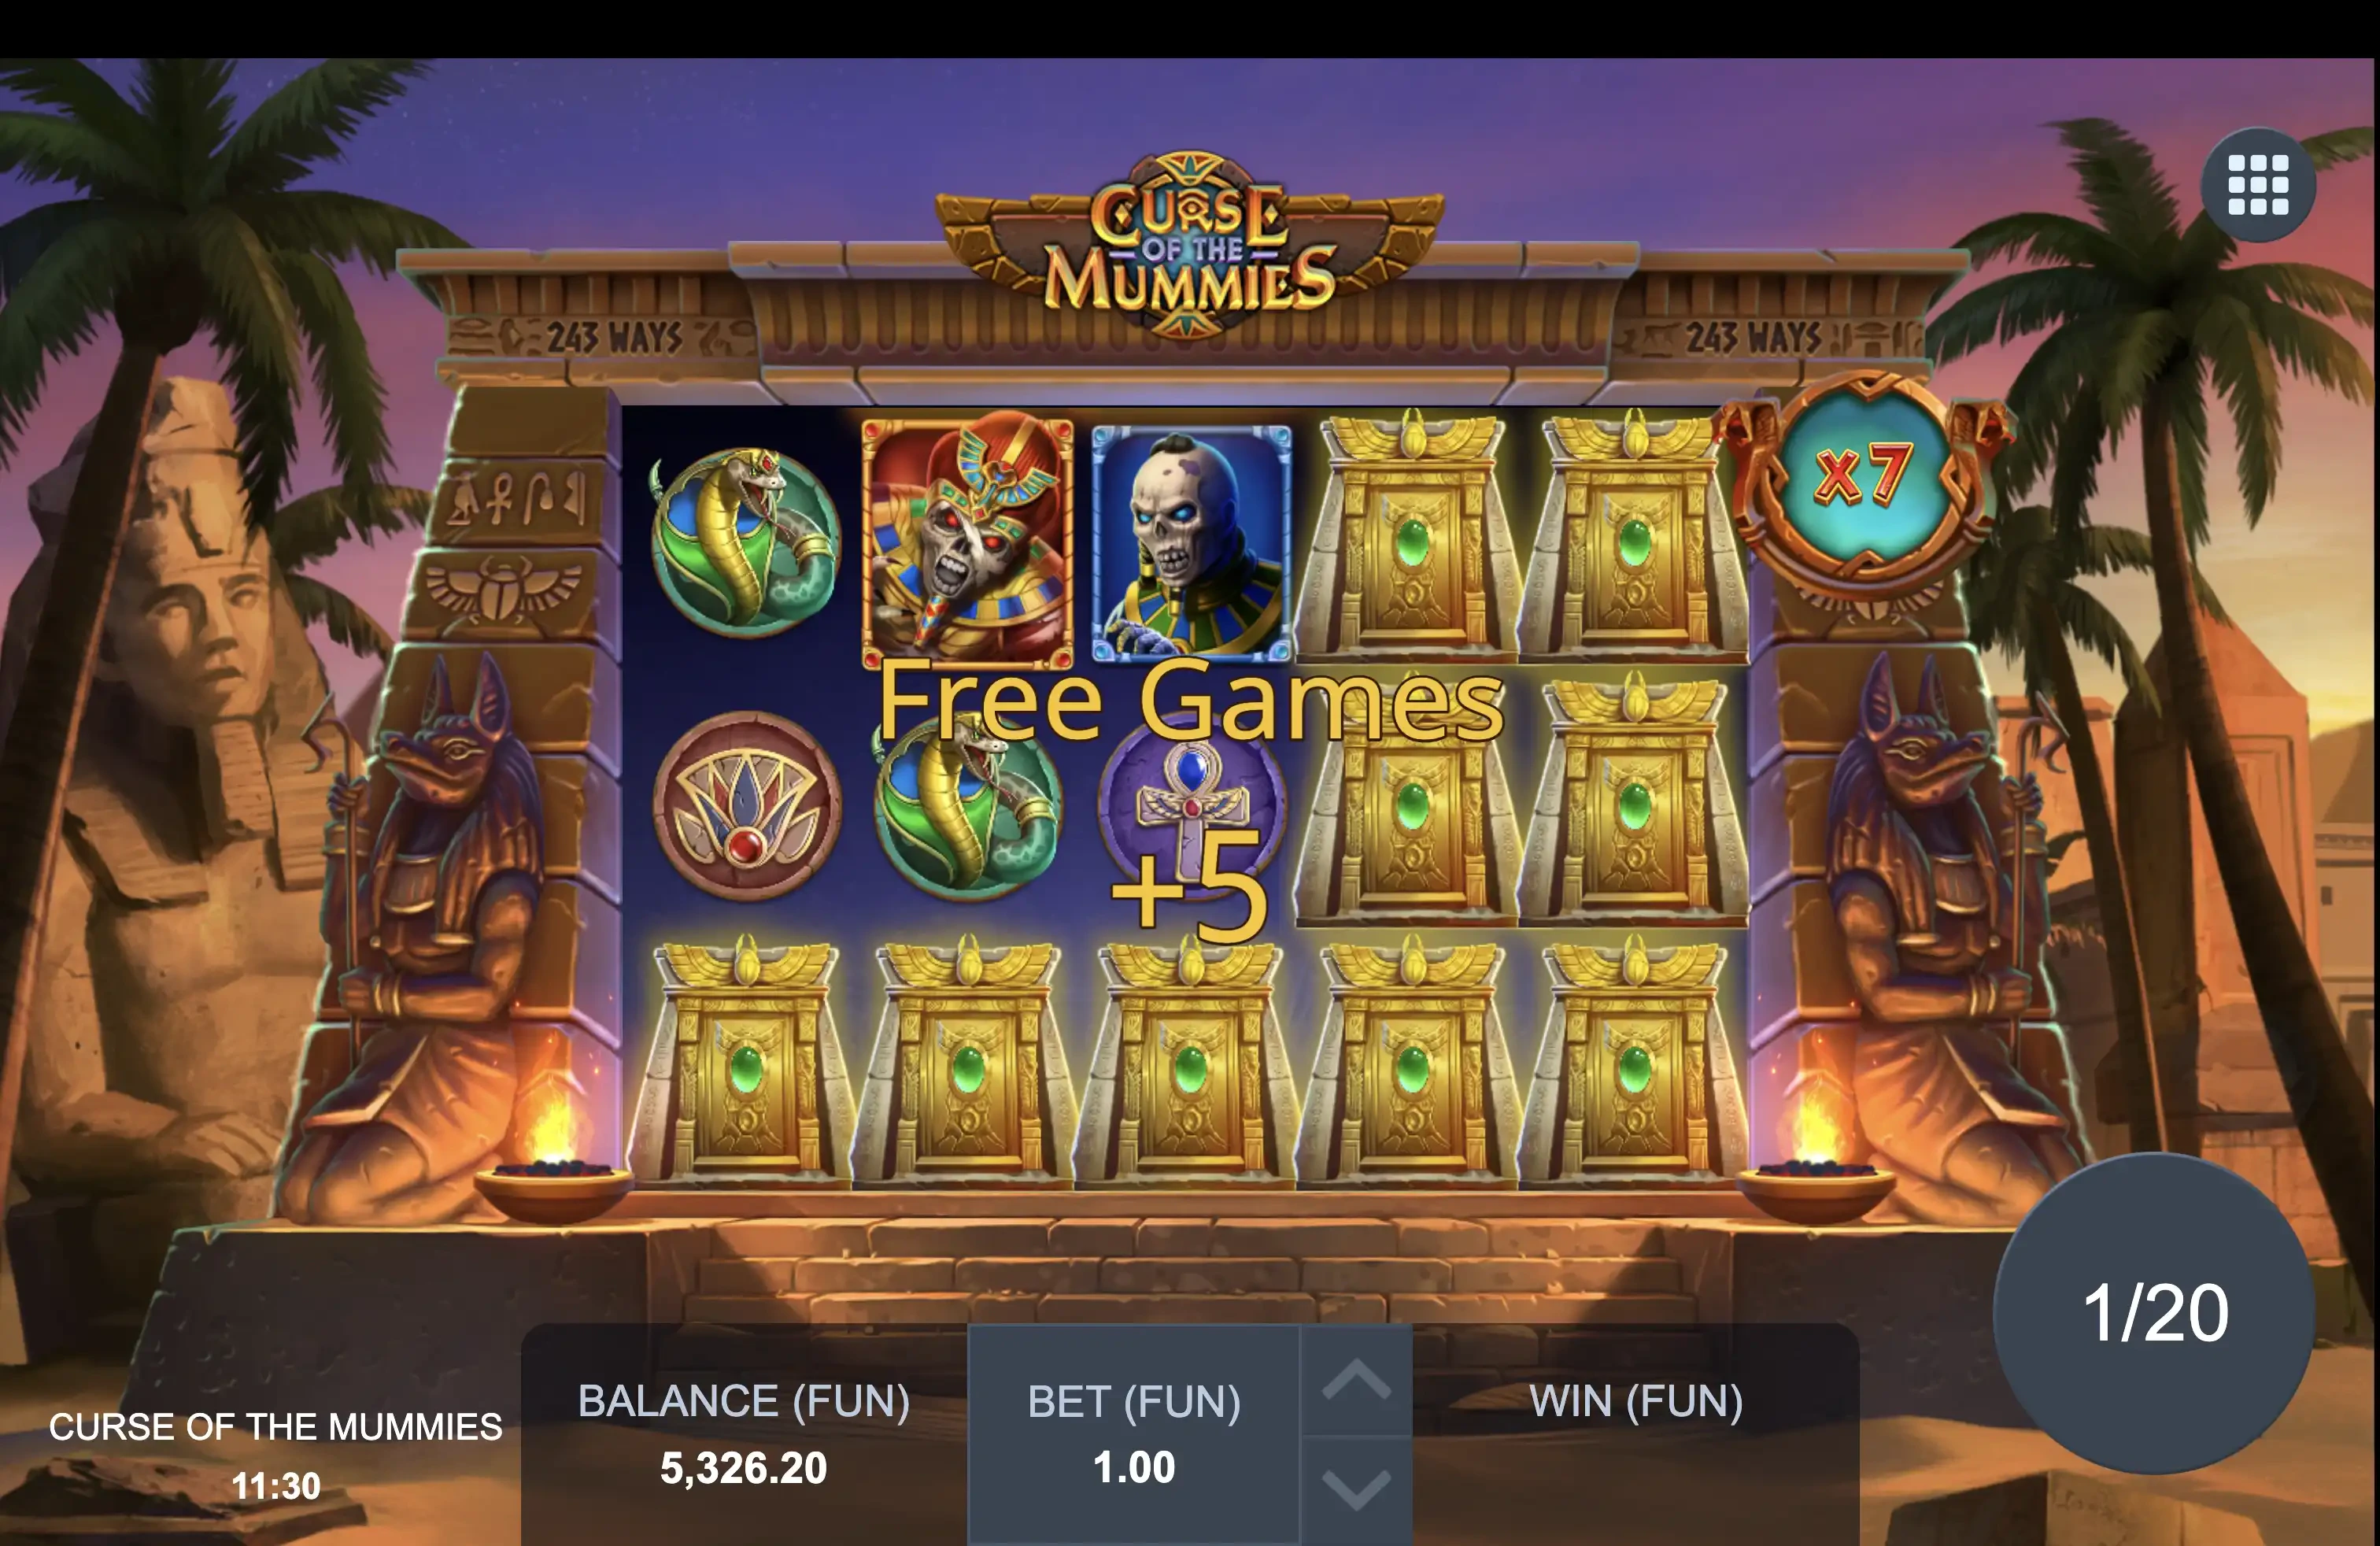 Obtention de parties gratuites supplémentaires durant le bonus sur la machine à sous Curse of the Mummies du provider Blue Guru Games en collaboration avec Relax Gaming